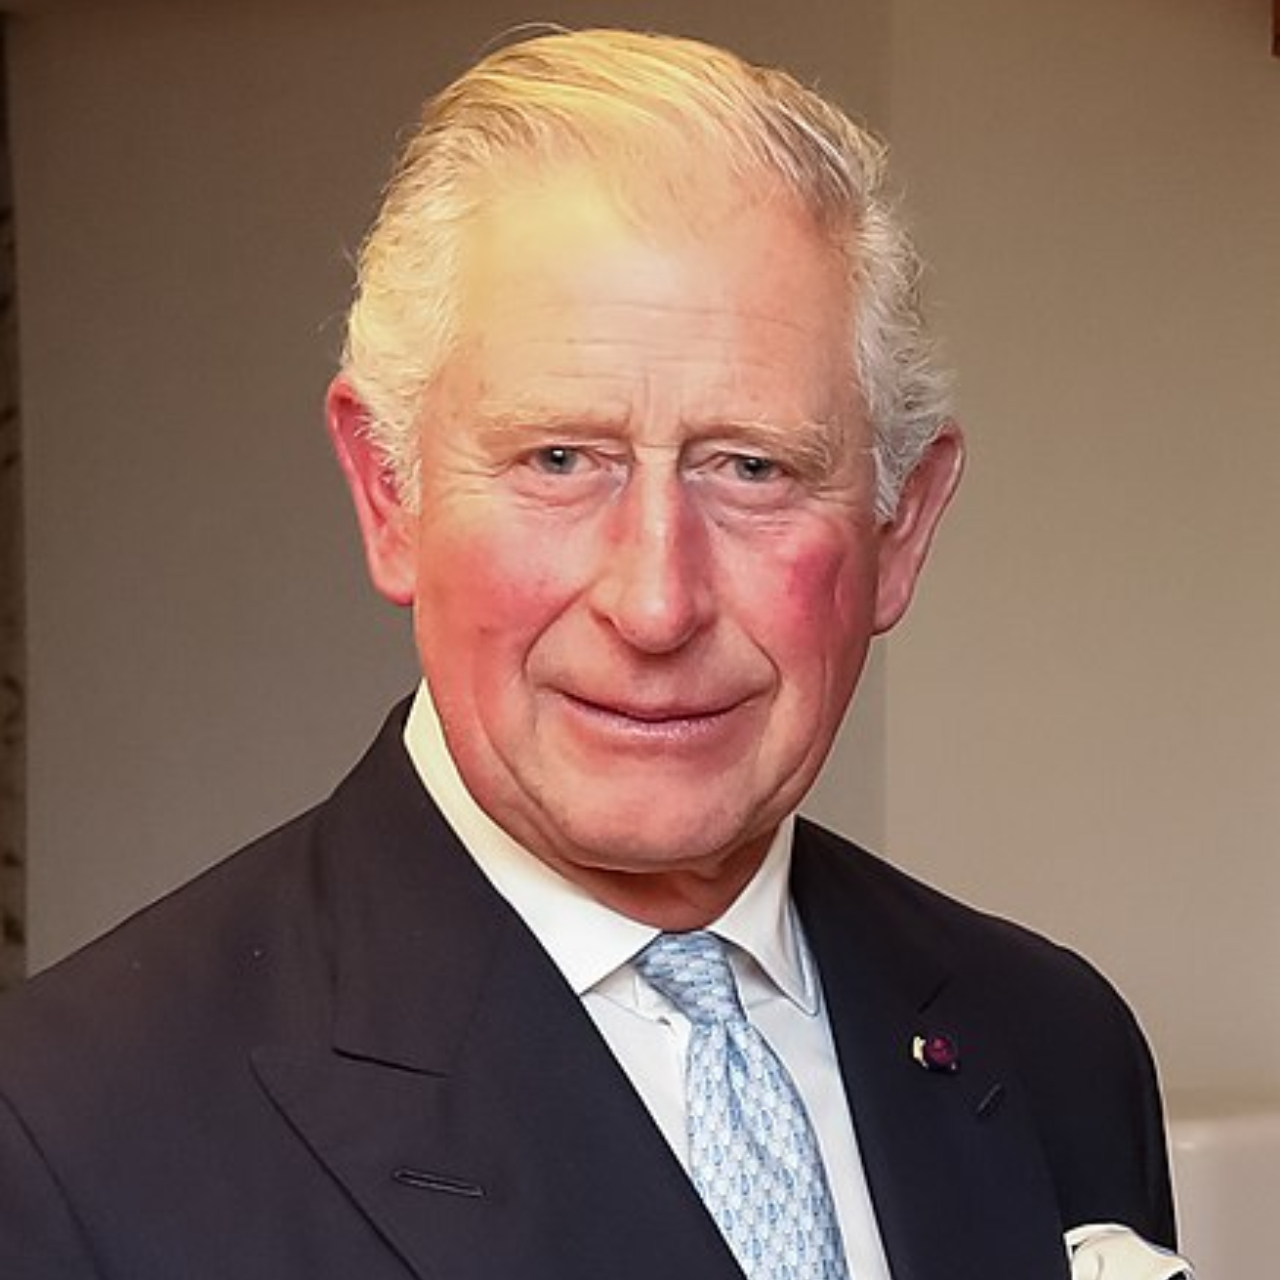 Príncipe Charles, filho da rainha Elizabeth II